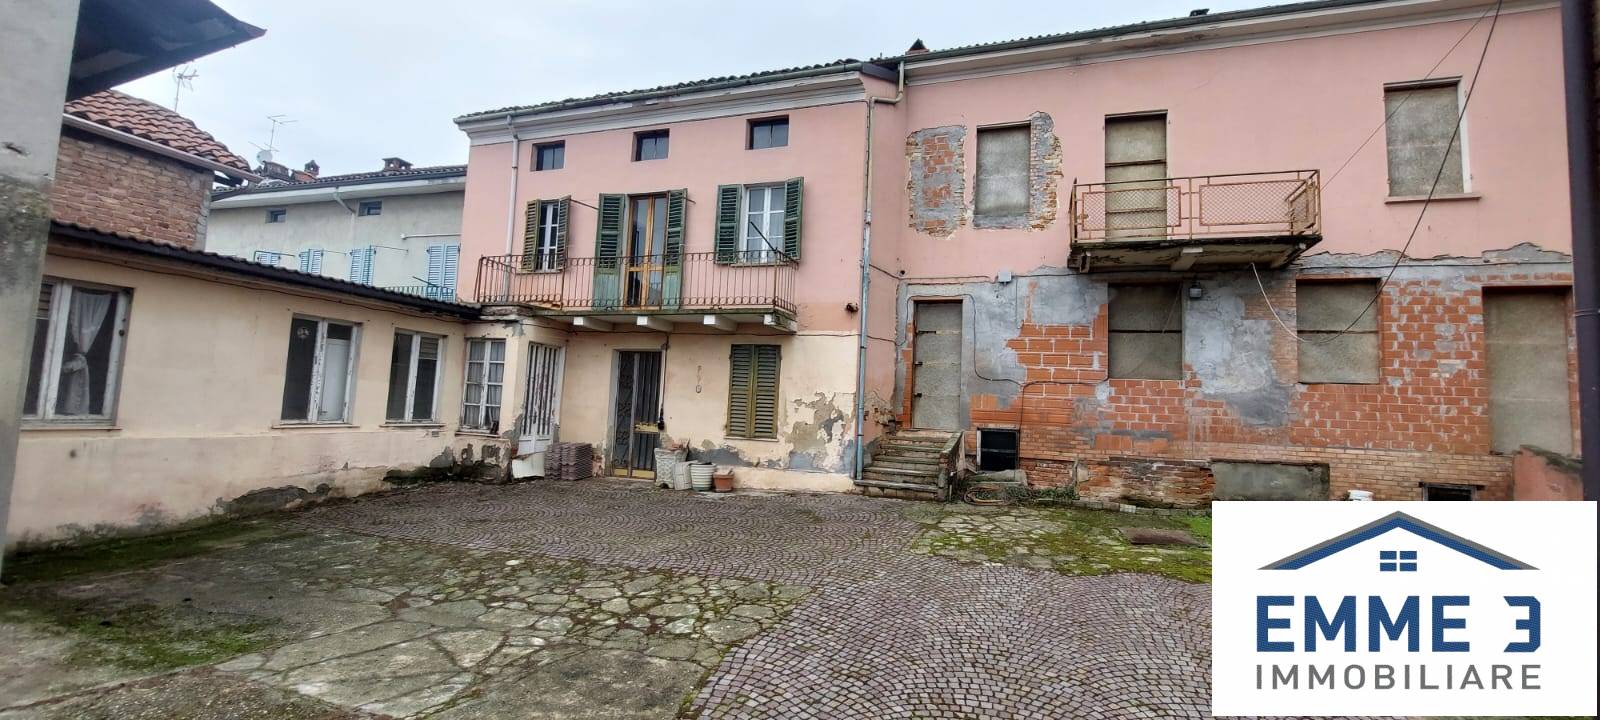 Rustico / Casale in vendita a San Salvatore Monferrato, 11 locali, prezzo € 65.000 | PortaleAgenzieImmobiliari.it